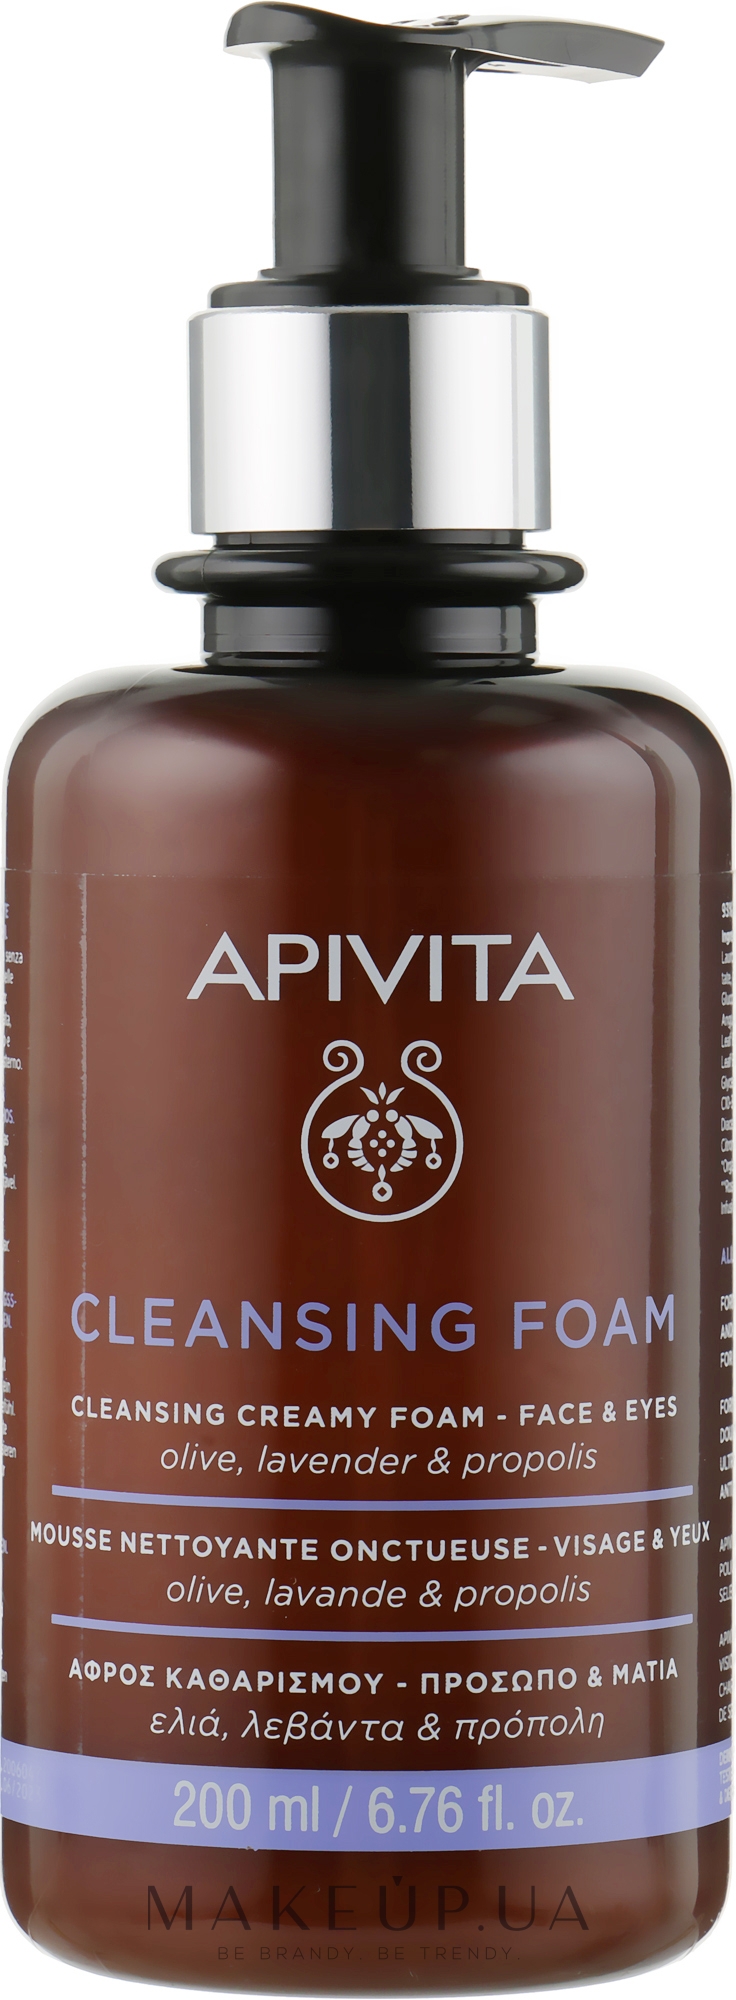 Пенка для очищения лица и глаз с оливой, лавандой и прополисом - Apivita Face & Eye Olive Lavender & Propolis Cleansing Foam — фото 200ml